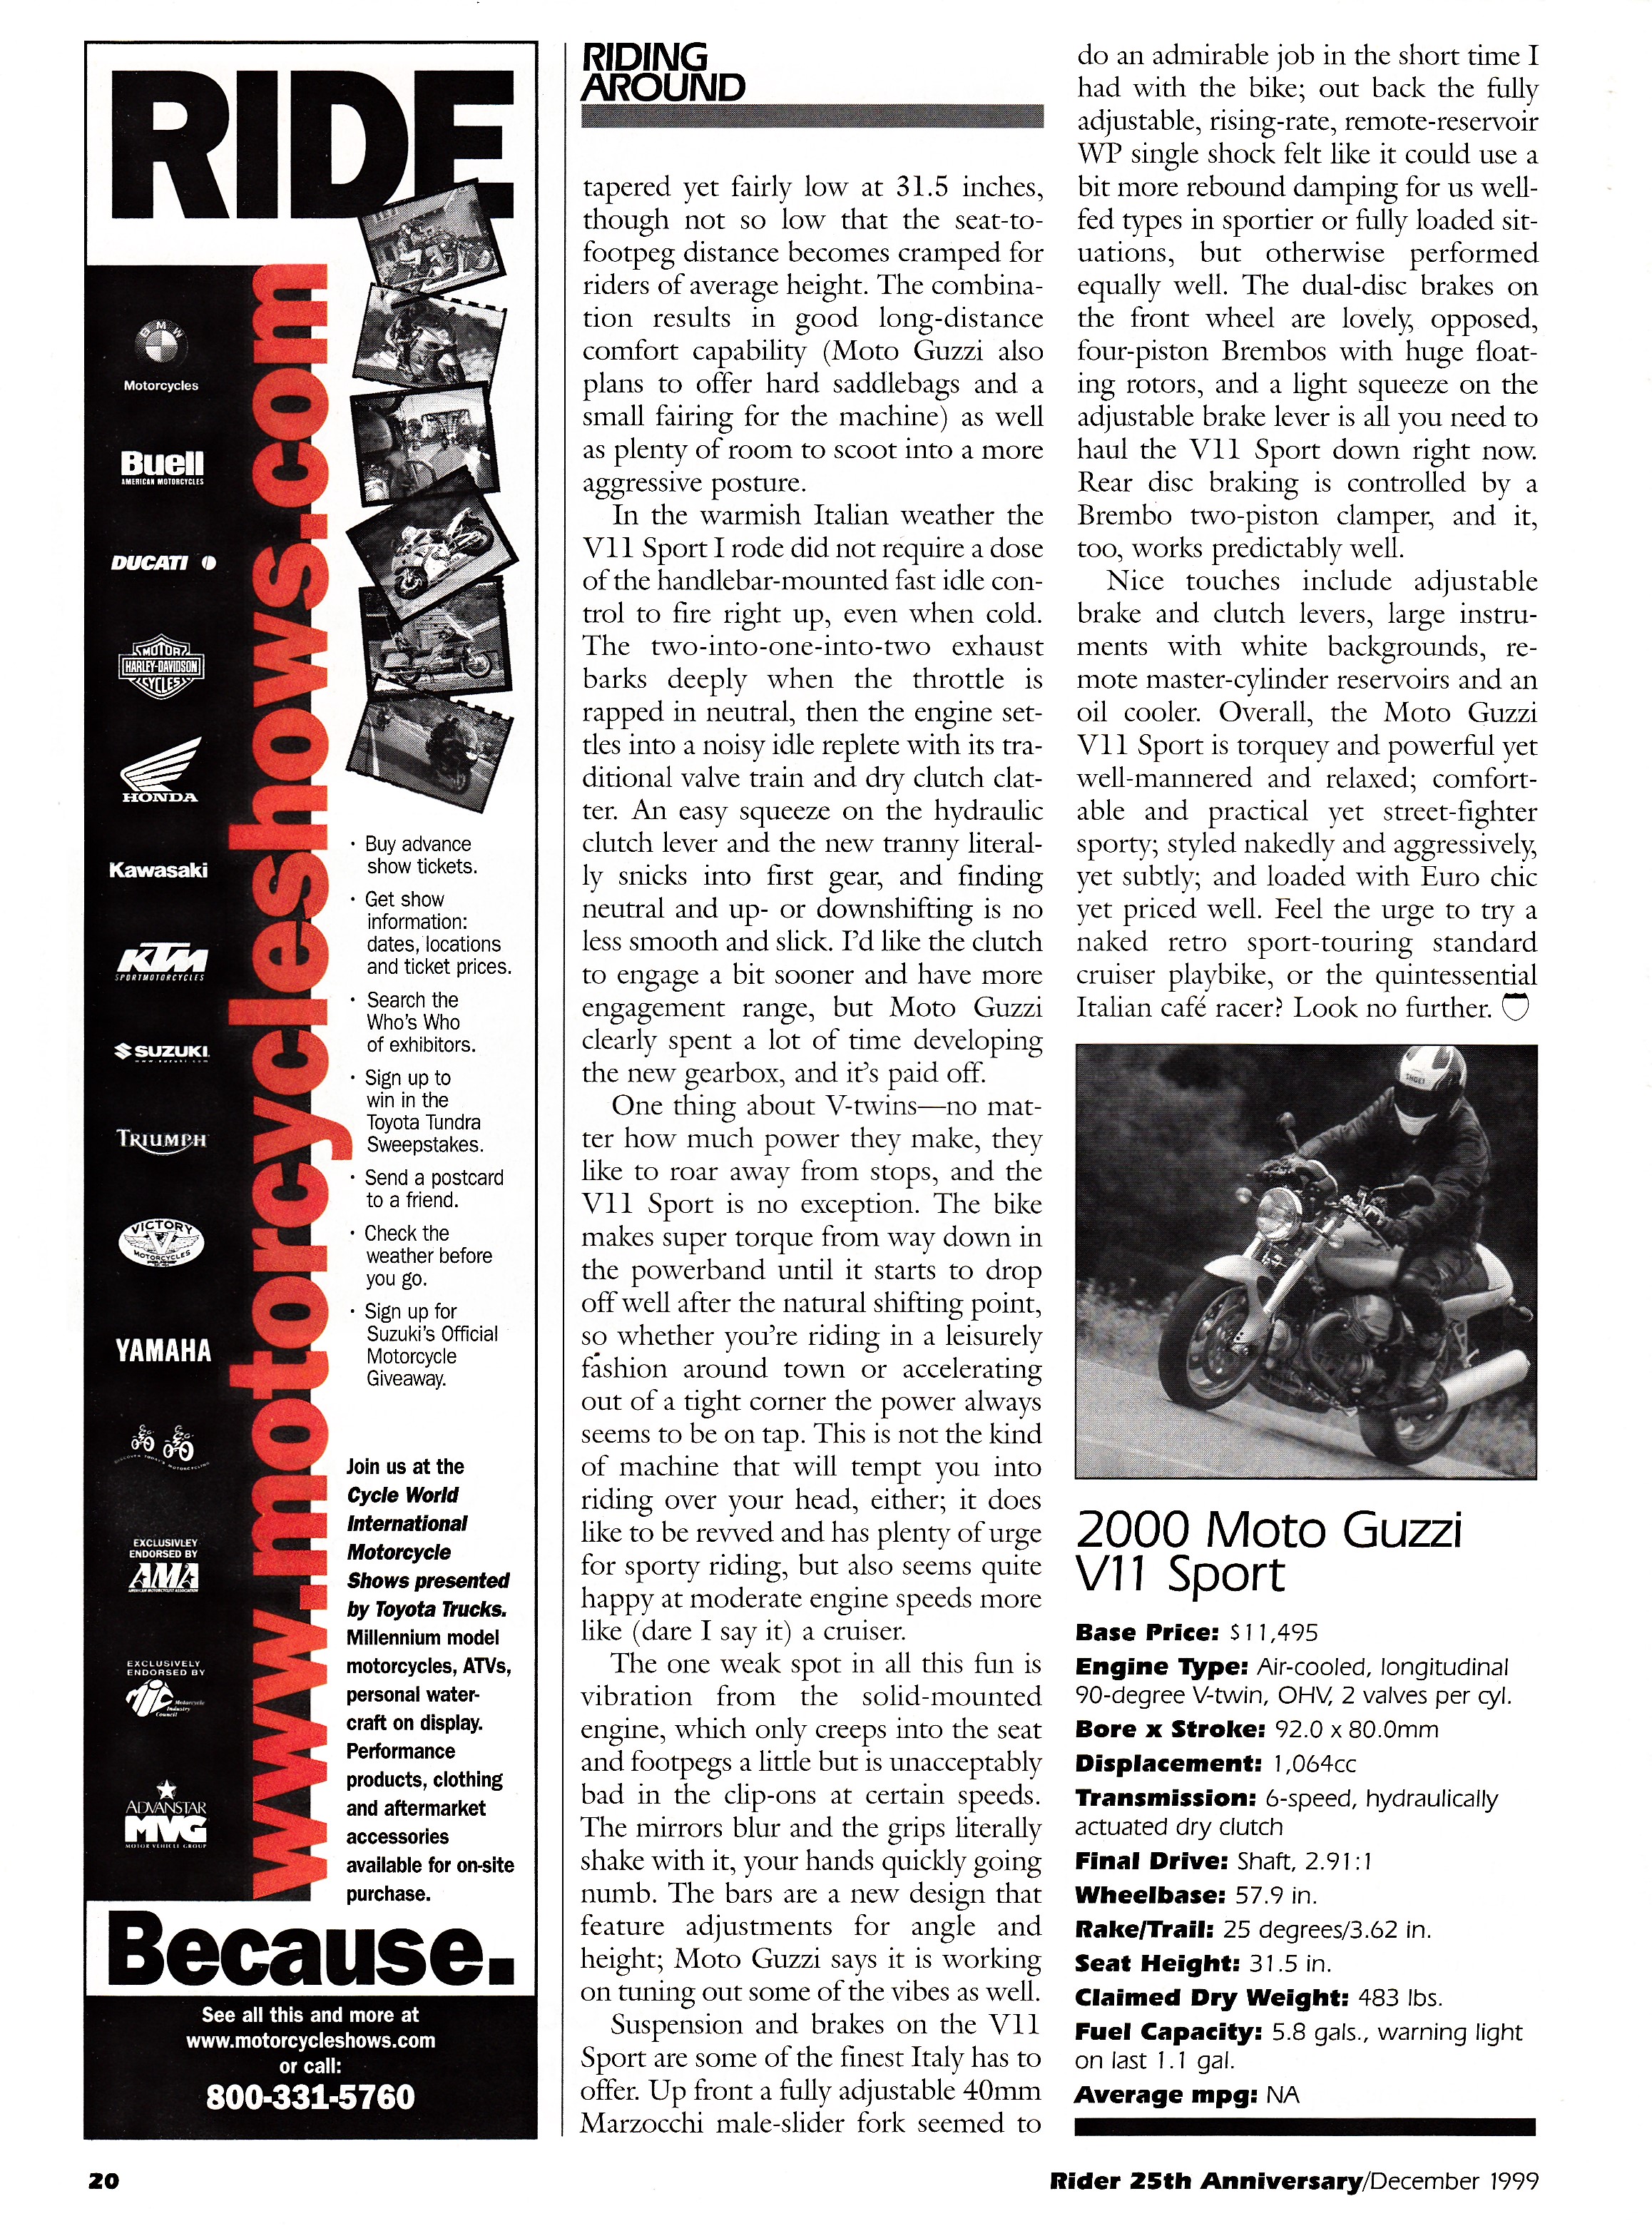 Article - Rider (1999 December) 2000 Moto Guzzi V11 Sport: The Italian café racer.